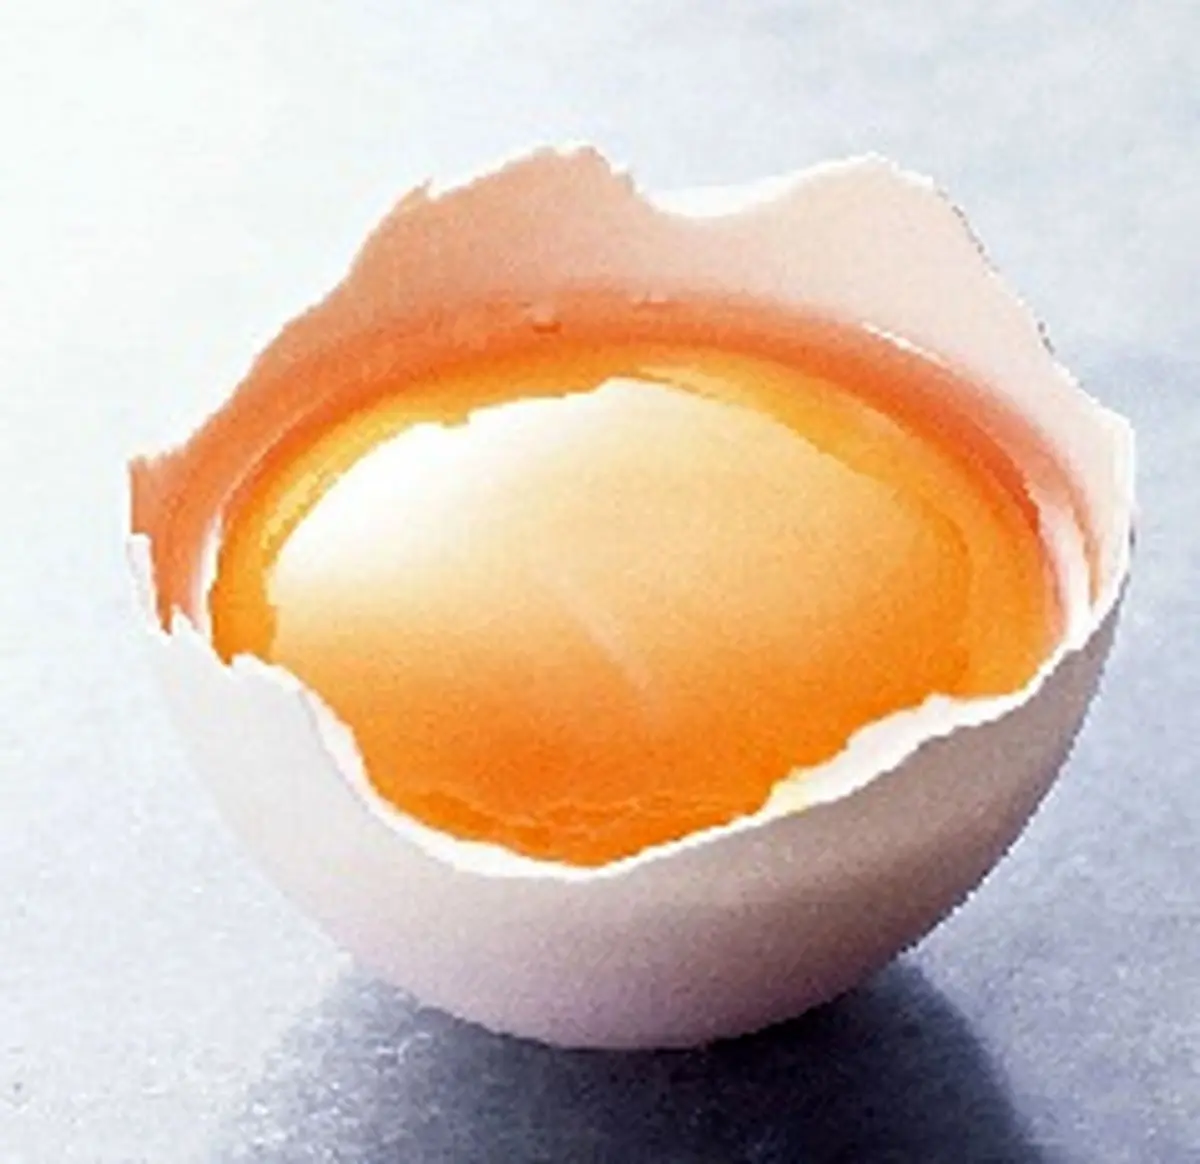  سفیده تخم مرغ، معجزه ی پوست